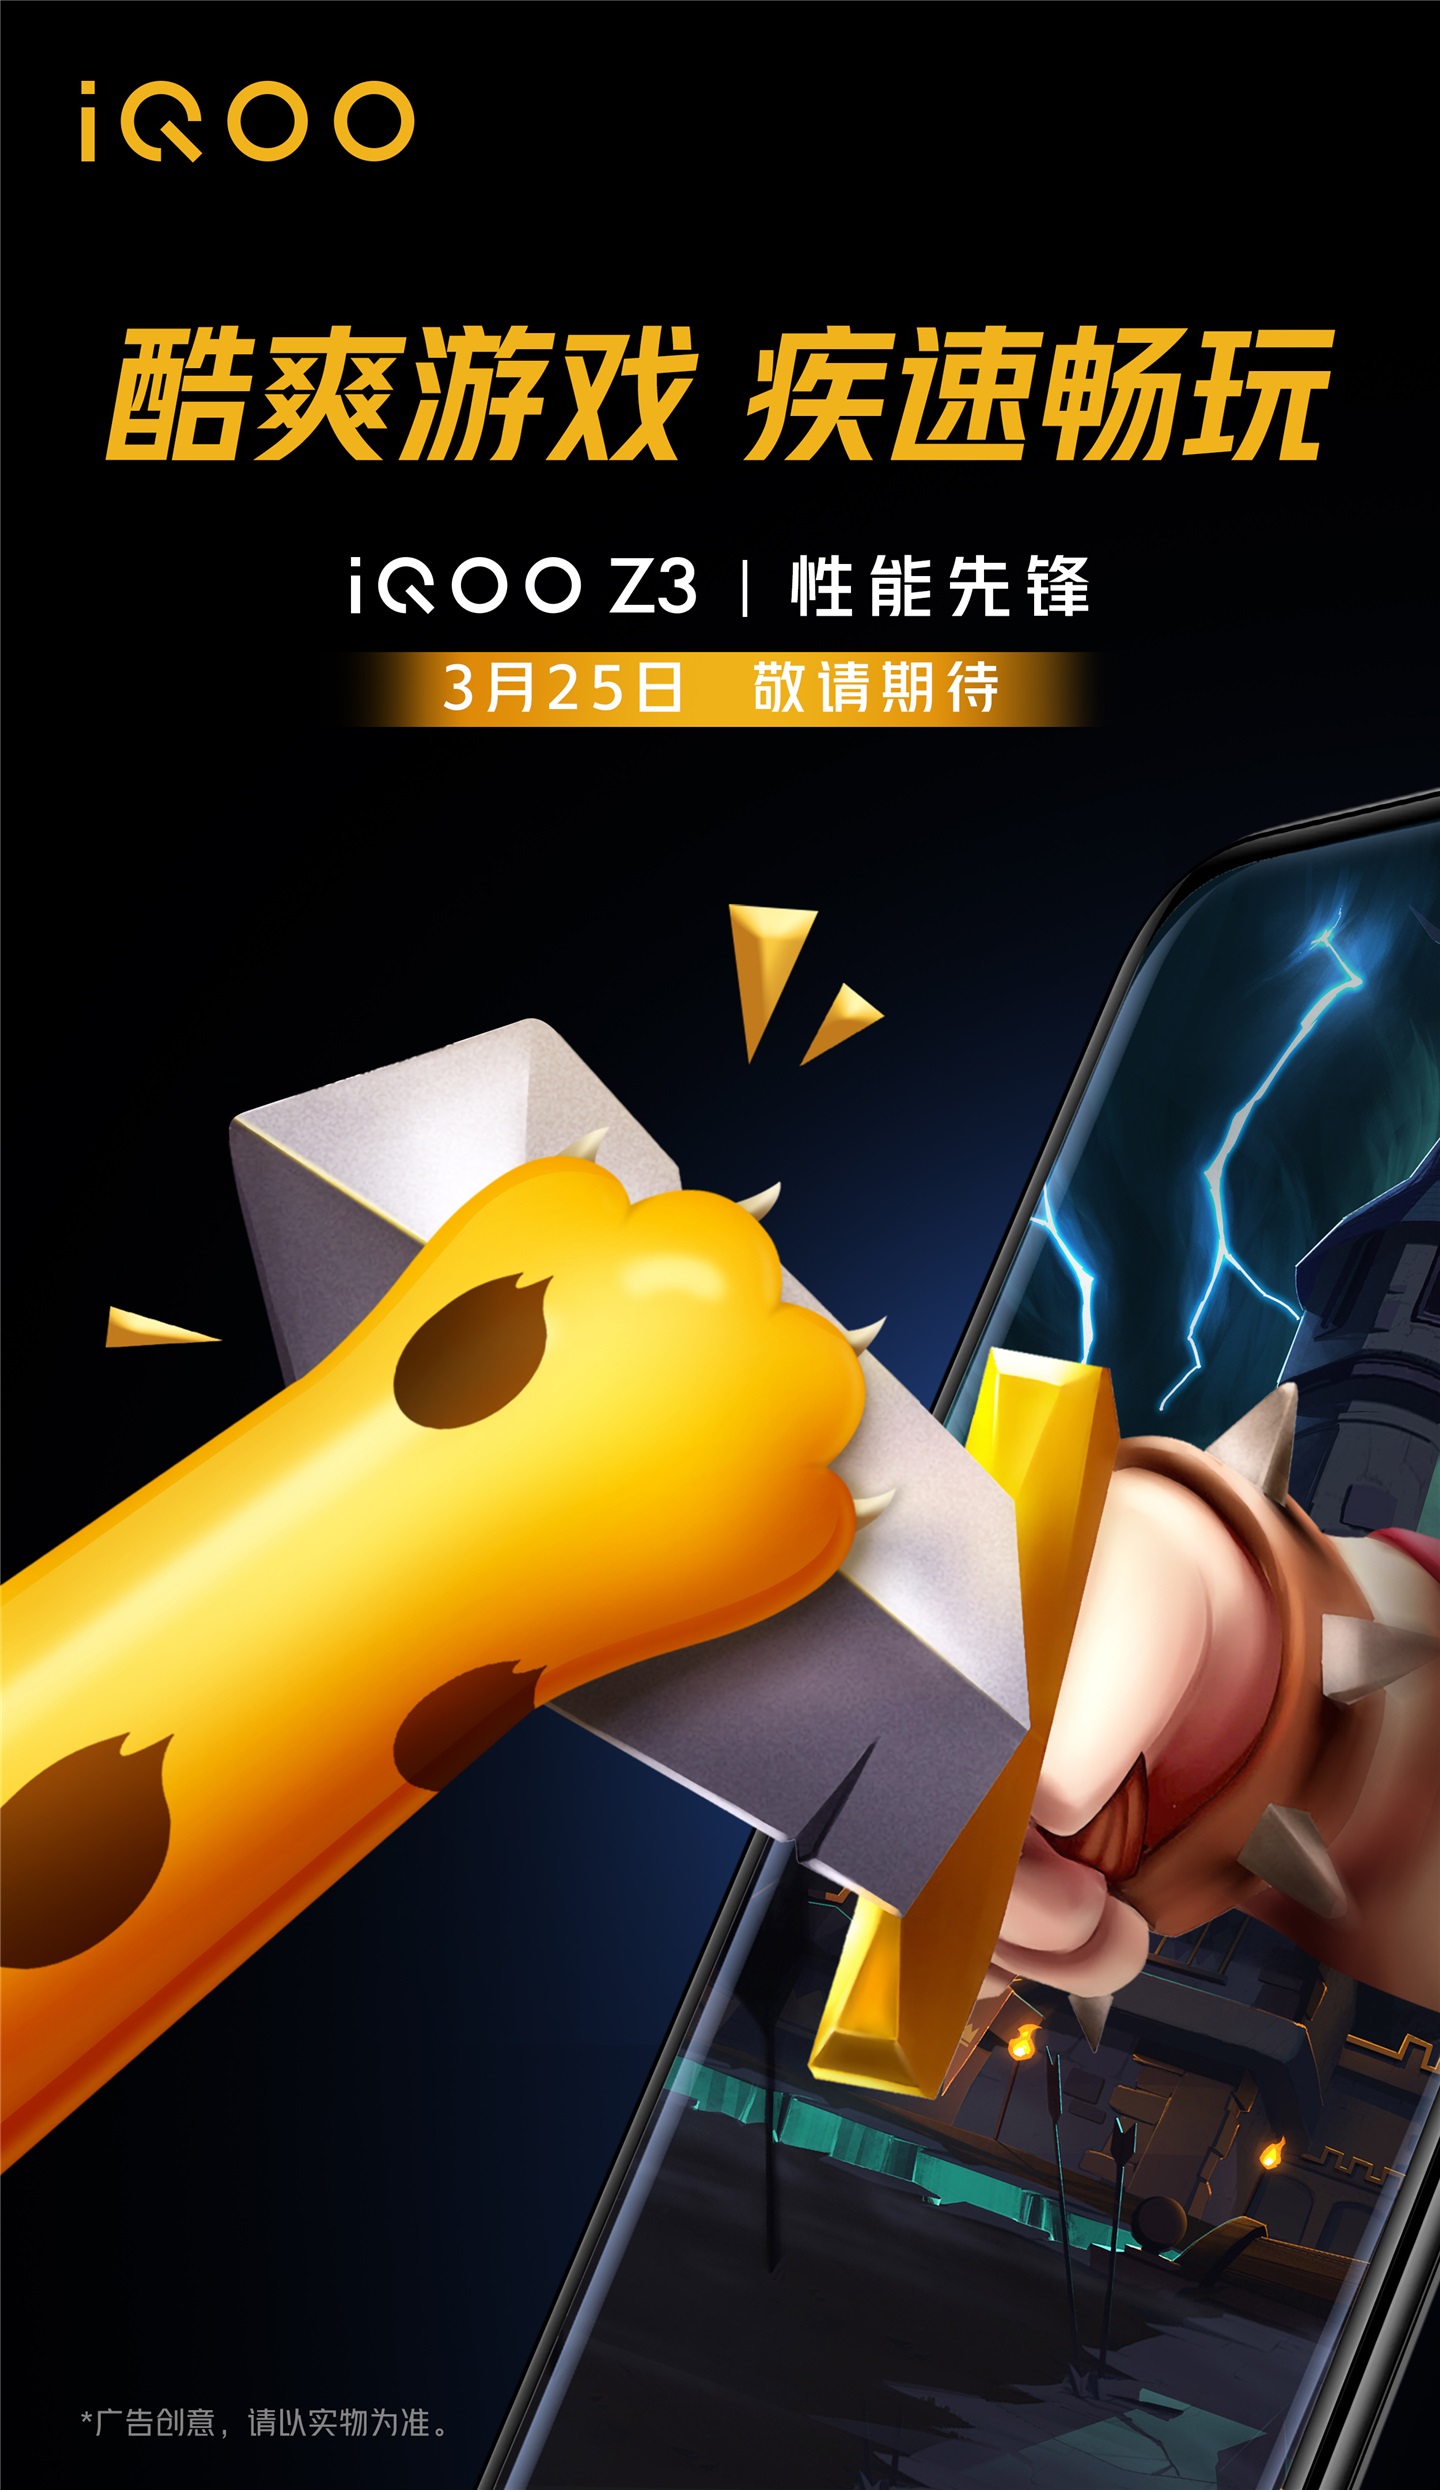 Specyfikacje ekranu iQOO Z3